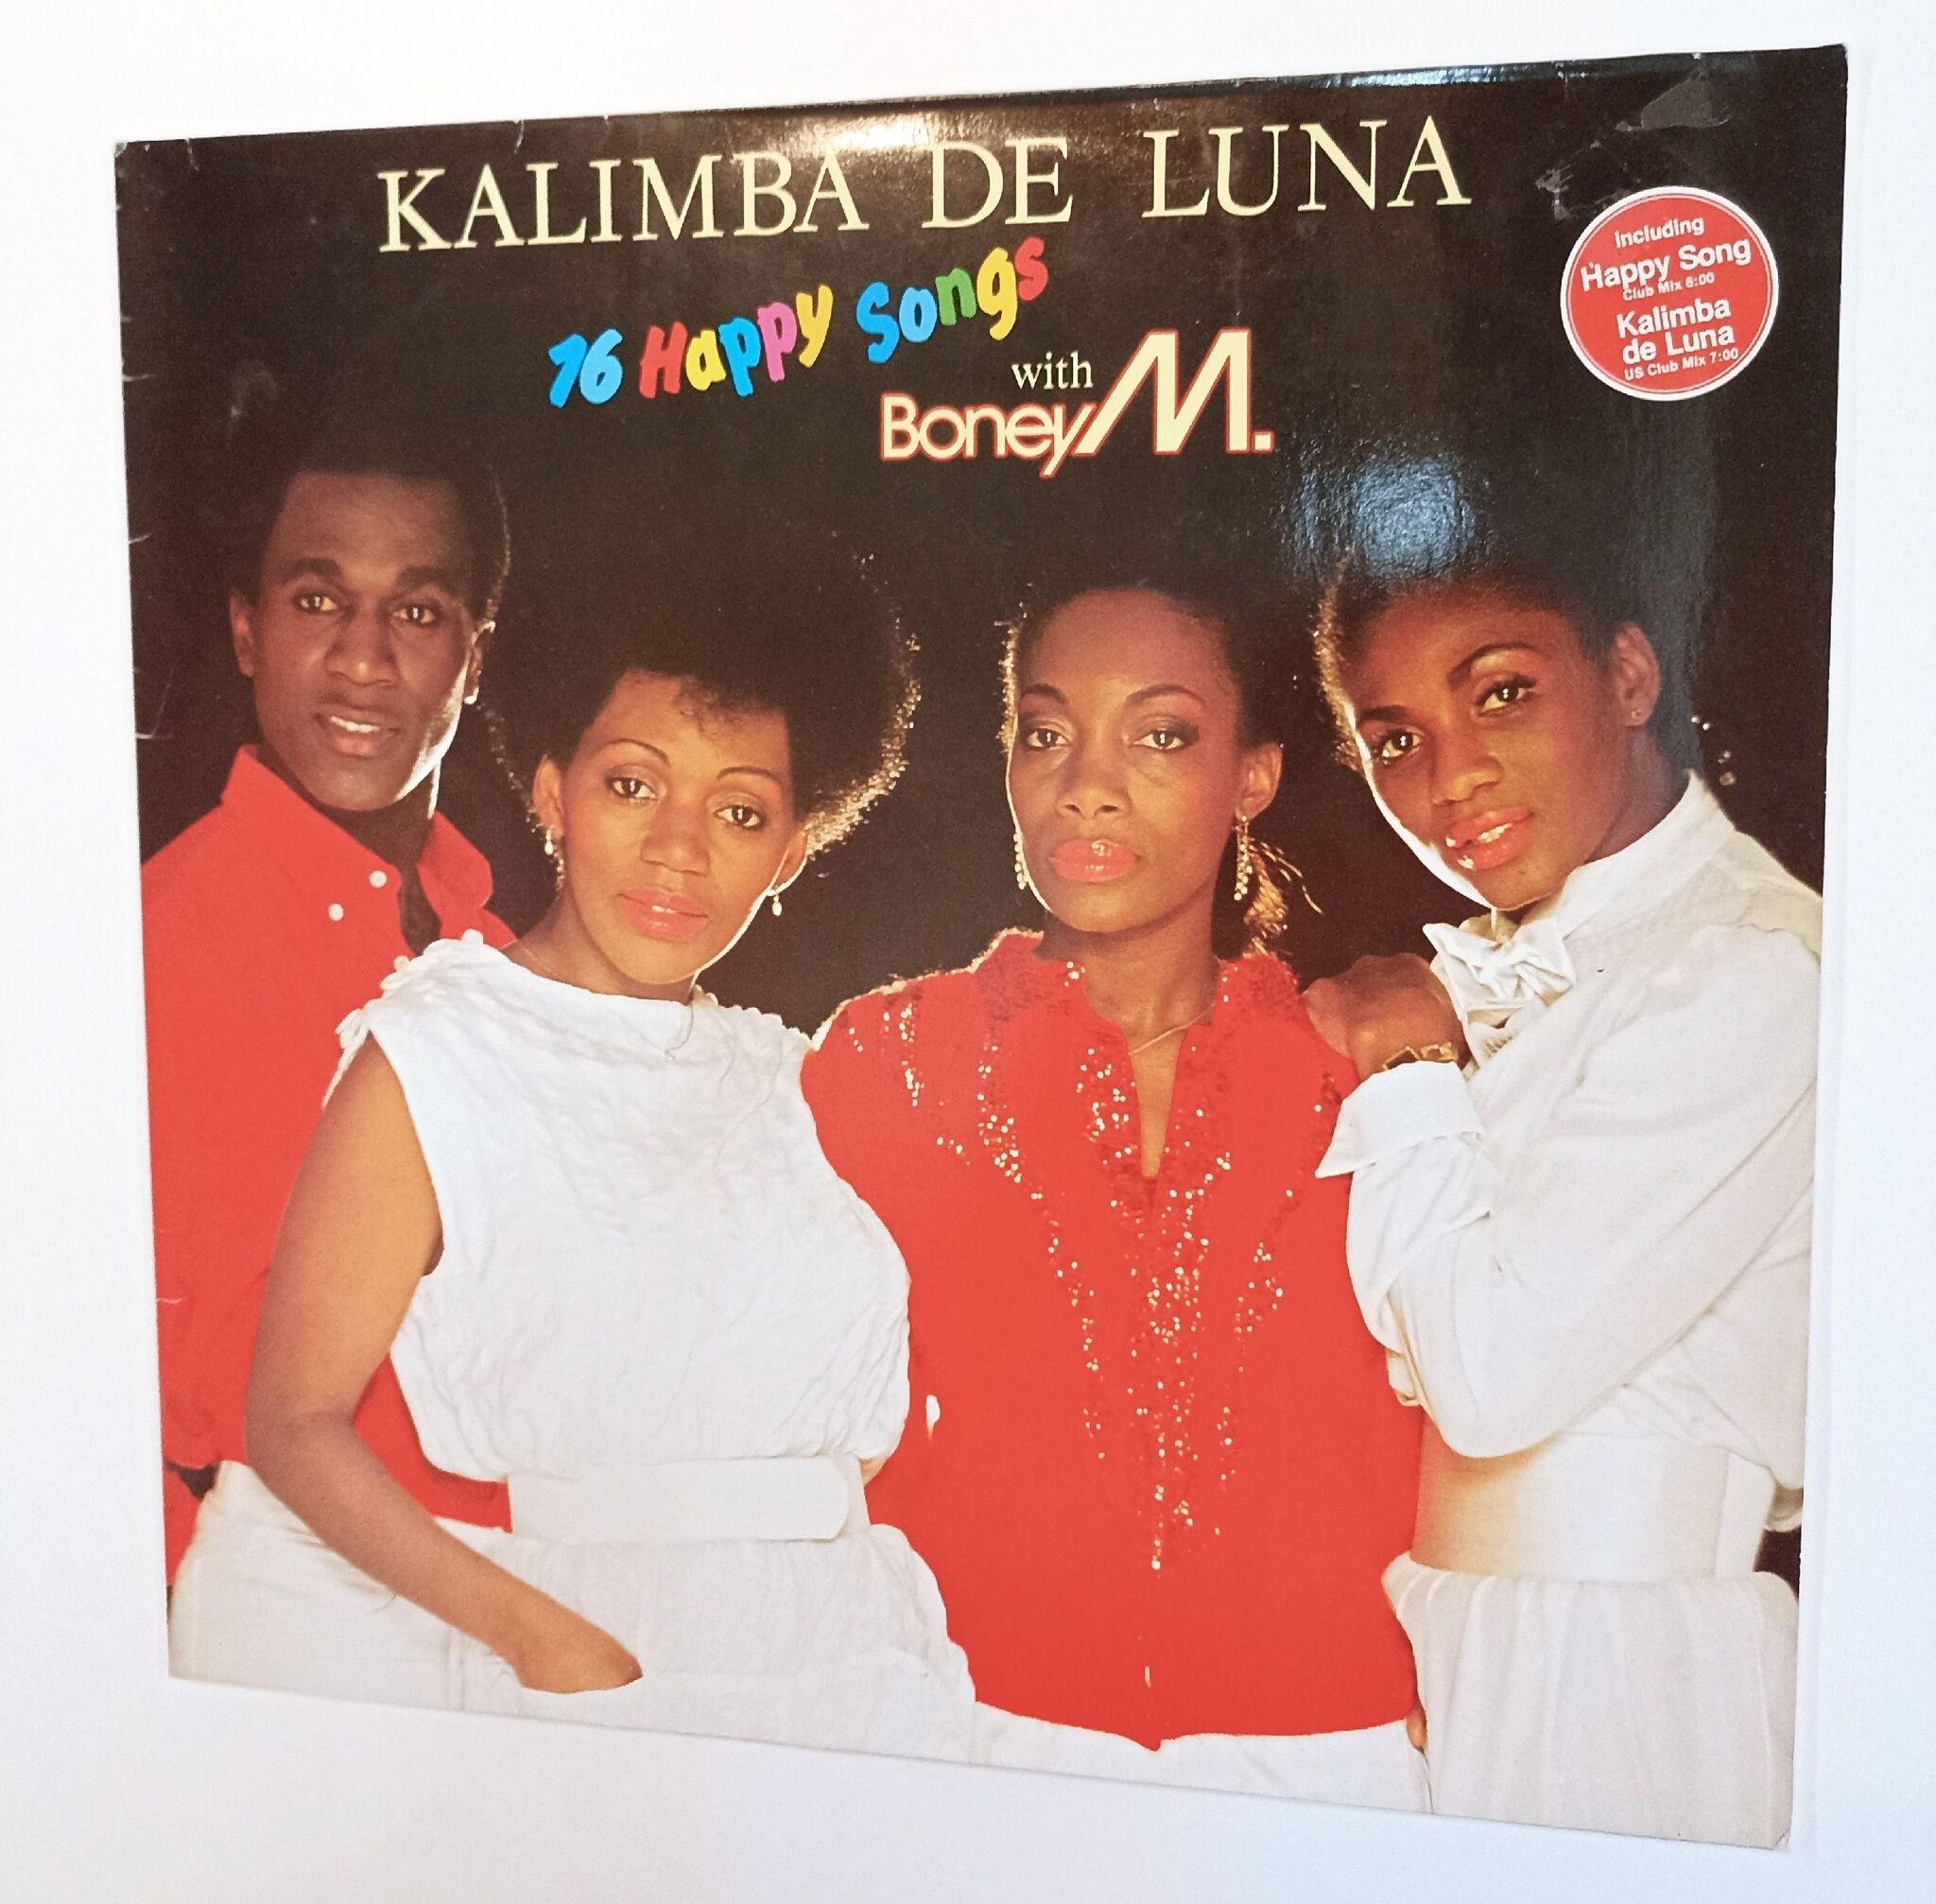 Boney m kalimba de. Boney m "Kalimba de Luna". Kalimba de Luna – 16 Happy Songs Boney m.. Kalimba de Luna – 16 Happy Songs Boney m. сони Рекордс. Boney m Kalimba de Luna фото.